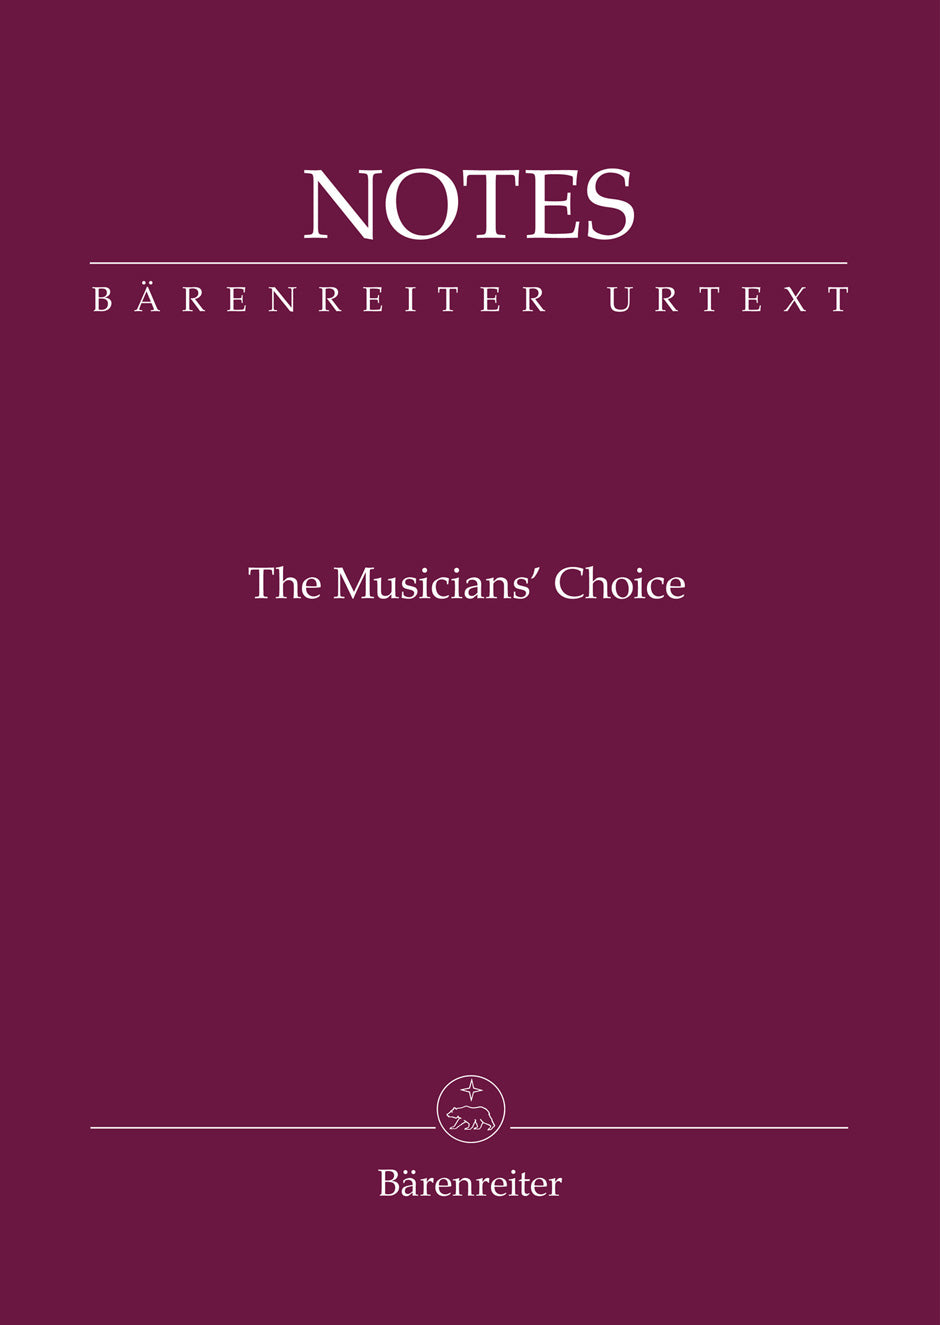 Manuscript Paper Notebook: Bärenreiter, Notes - The Musician's Choice (Aubergine) 32 pgs (5.8"x4.1")